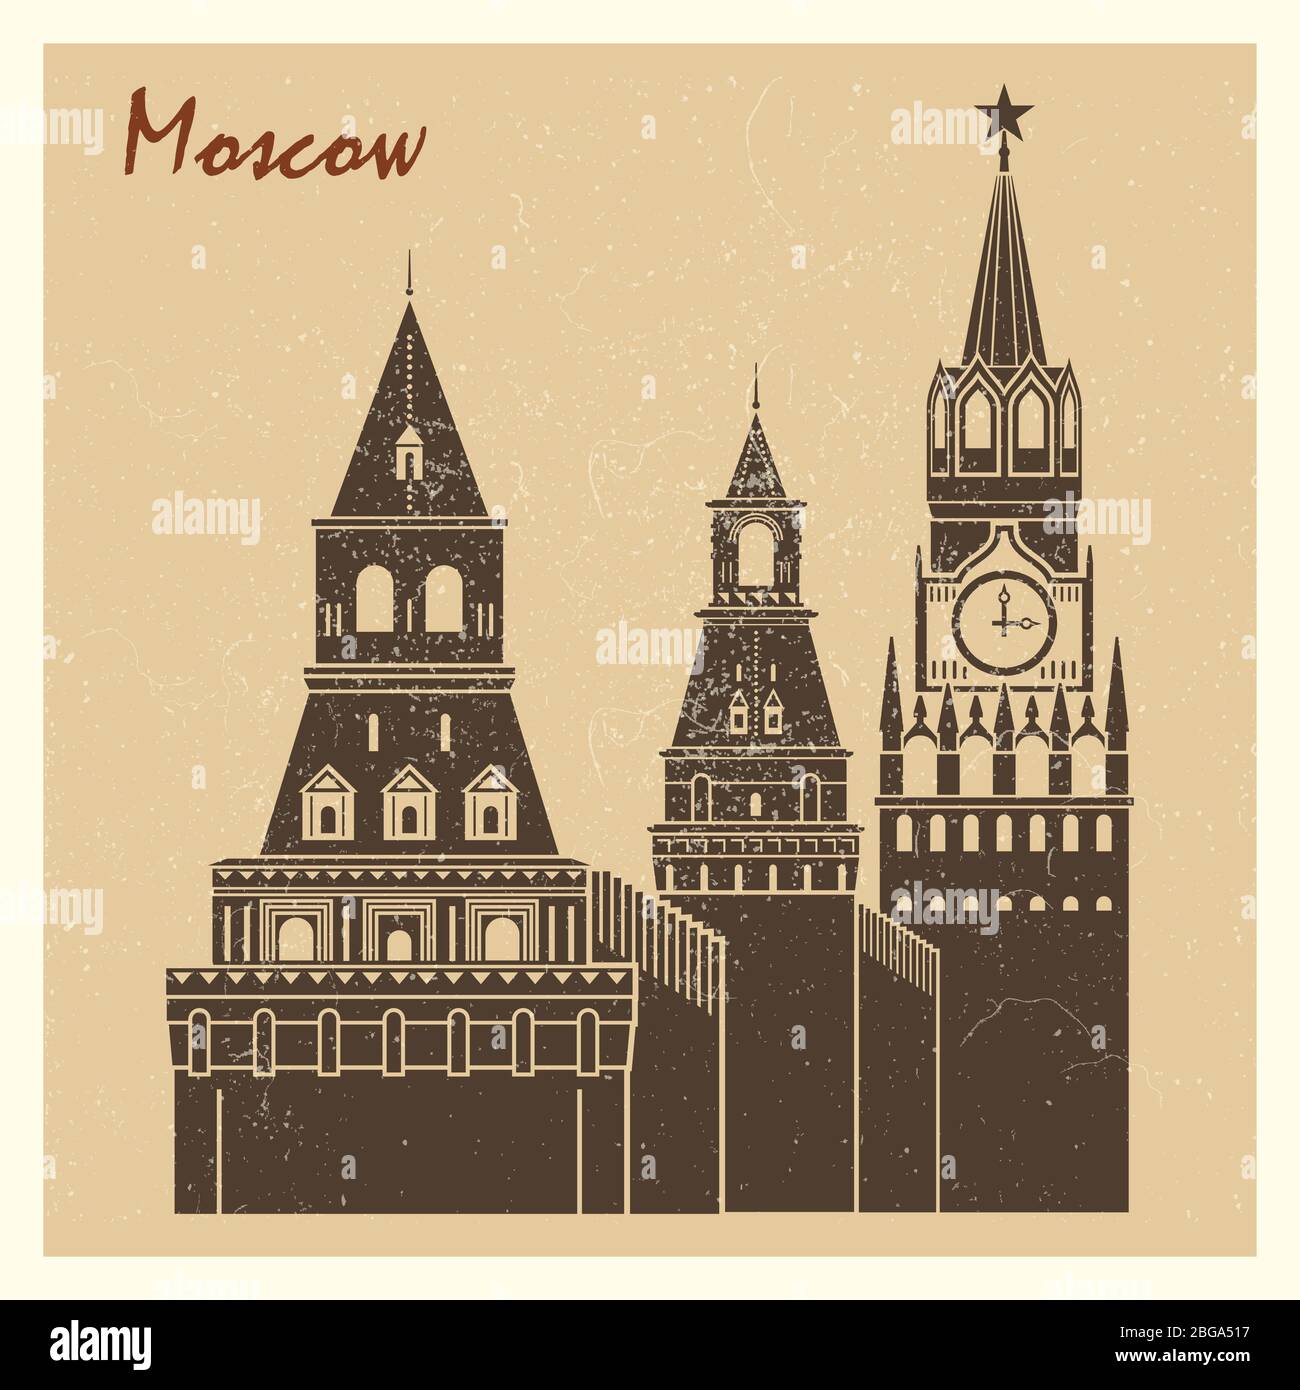 Le motif carte postale du Kremlin de la ville de Moscou vintage. Illustration vectorielle plate Illustration de Vecteur